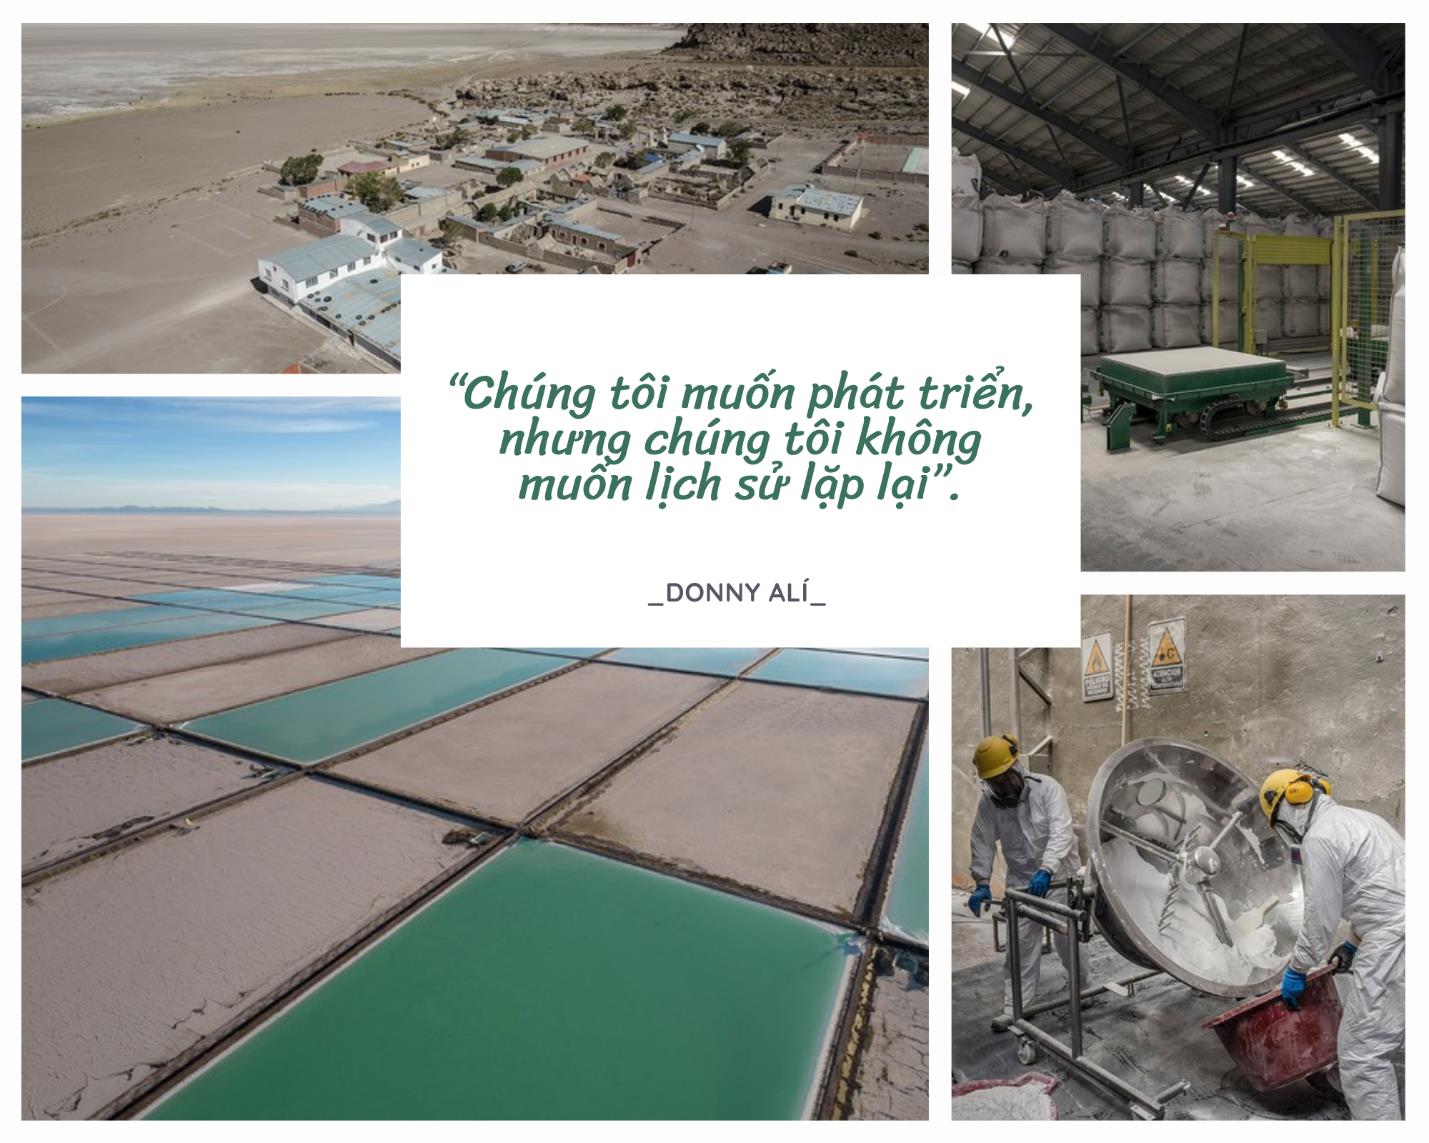 Tai hoạ mang tên lithium: Chuyện về vùng đất sở hữu mỏ “vàng trắng” lớn nhất thế giới nhưng nghèo xác xơ - Ảnh 3.